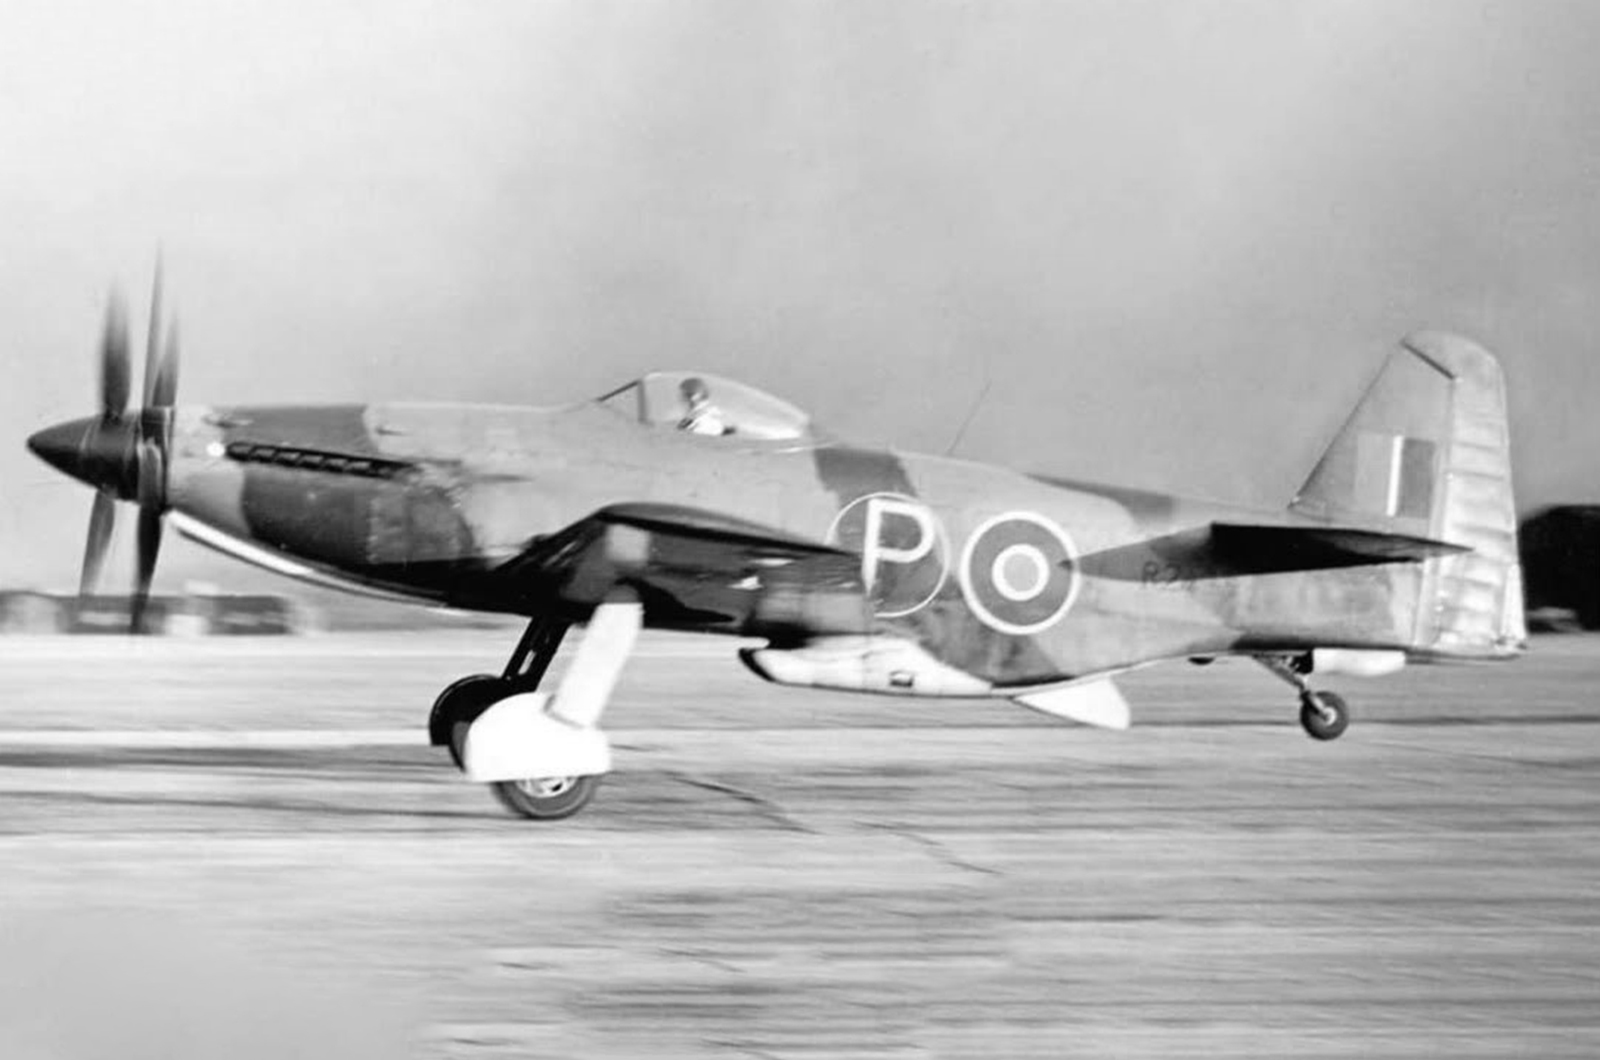 <p>Peut-être le plus grand "might-have-been" allié de la guerre ? Le Martin-Baker M.B.5 britannique a été unanimement loué par ceux qui l'ont piloté pour sa vitesse, son rayon d'action et son taux de montée exceptionnel. La clé de ses formidables performances réside dans ses hélices contrarotatives à deux étages, qui lui permettent de mieux exploiter l'énorme puissance du moteur Rolls-Royce Griffon.</p><p>Une vitesse de pointe supérieure à 724 km/h, le cockpit le mieux conçu pour les pilotes et la facilité d'entretien font partie des nombreux atouts de ce superbe chasseur. Le chasseur polonais <strong>Janusz Żurakowski</strong>, qui a présenté le type en voltige au salon de <strong>Farnborough, </strong>a été totalement impressionné par le M.B.5 et l'a considéré comme supérieur au Spitfire à bien des égards.</p>